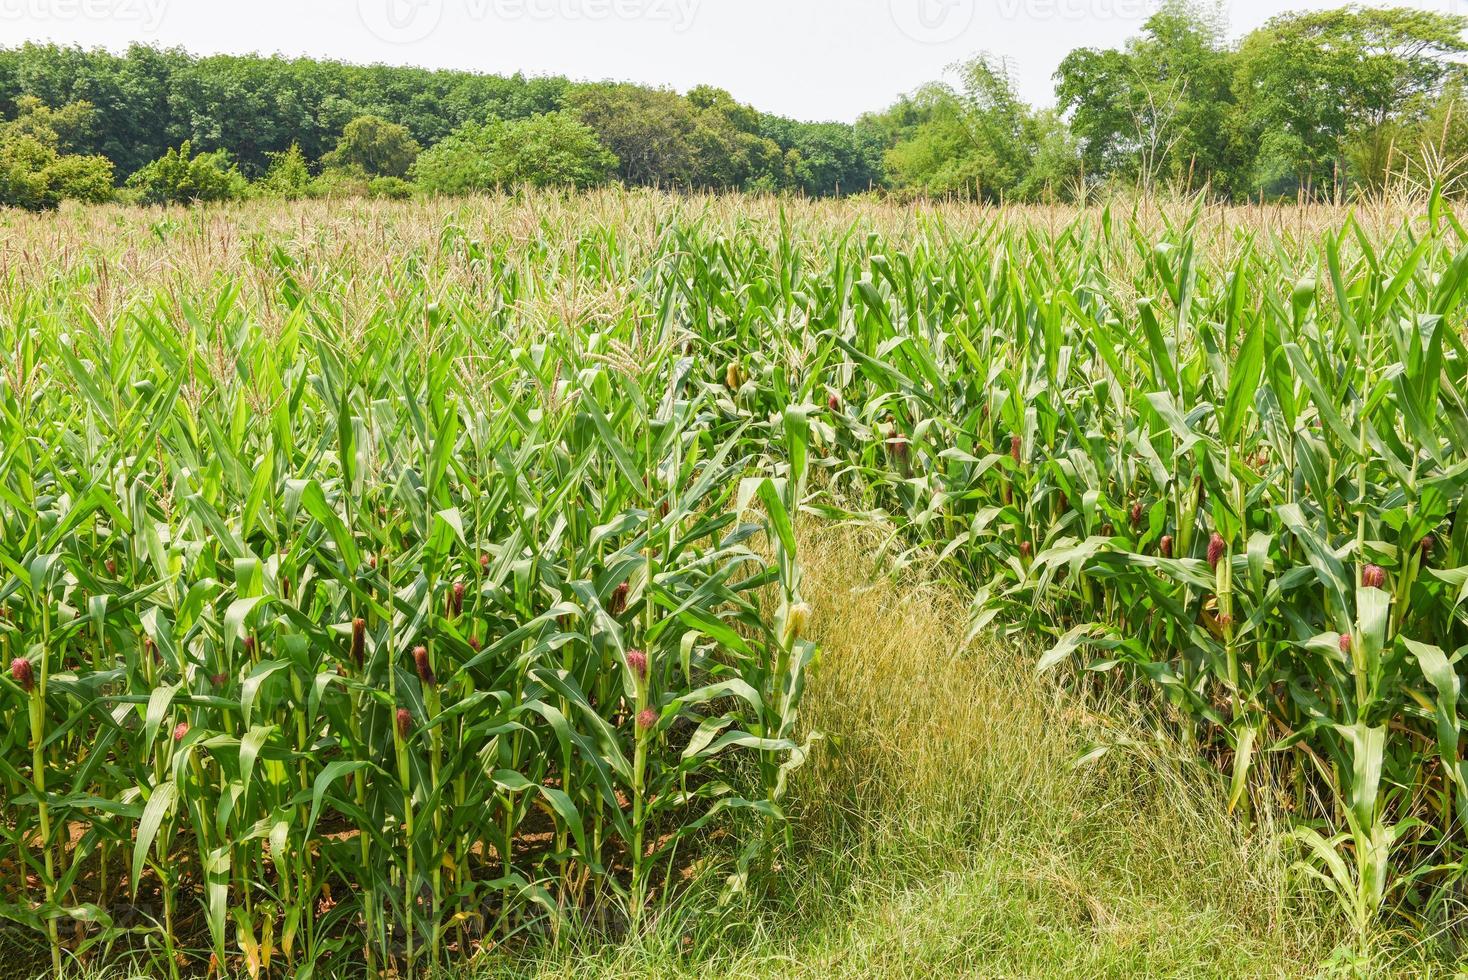 grünes maisfeld, maiskolben auf maisfeld in der Plantage landwirtschaft asiatisch foto